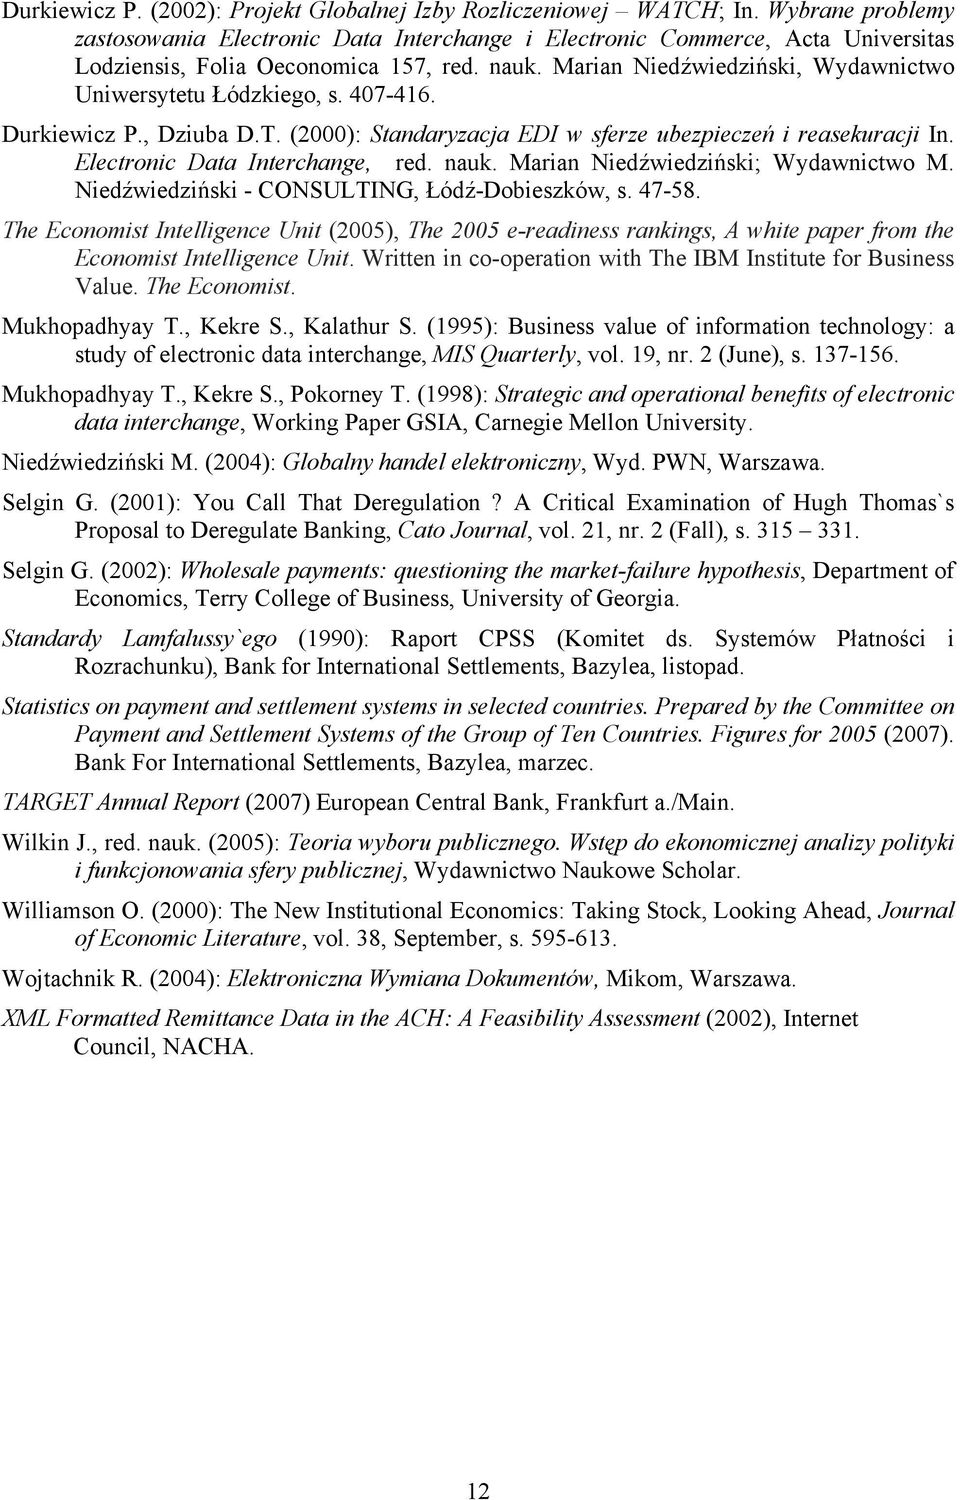 Marian Niedźwiedziński, Wydawnictwo Uniwersytetu Łódzkiego, s. 407-416. Durkiewicz P., Dziuba D.T. (2000): Standaryzacja EDI w sferze ubezpieczeń i reasekuracji In. Electronic Data Interchange, red.